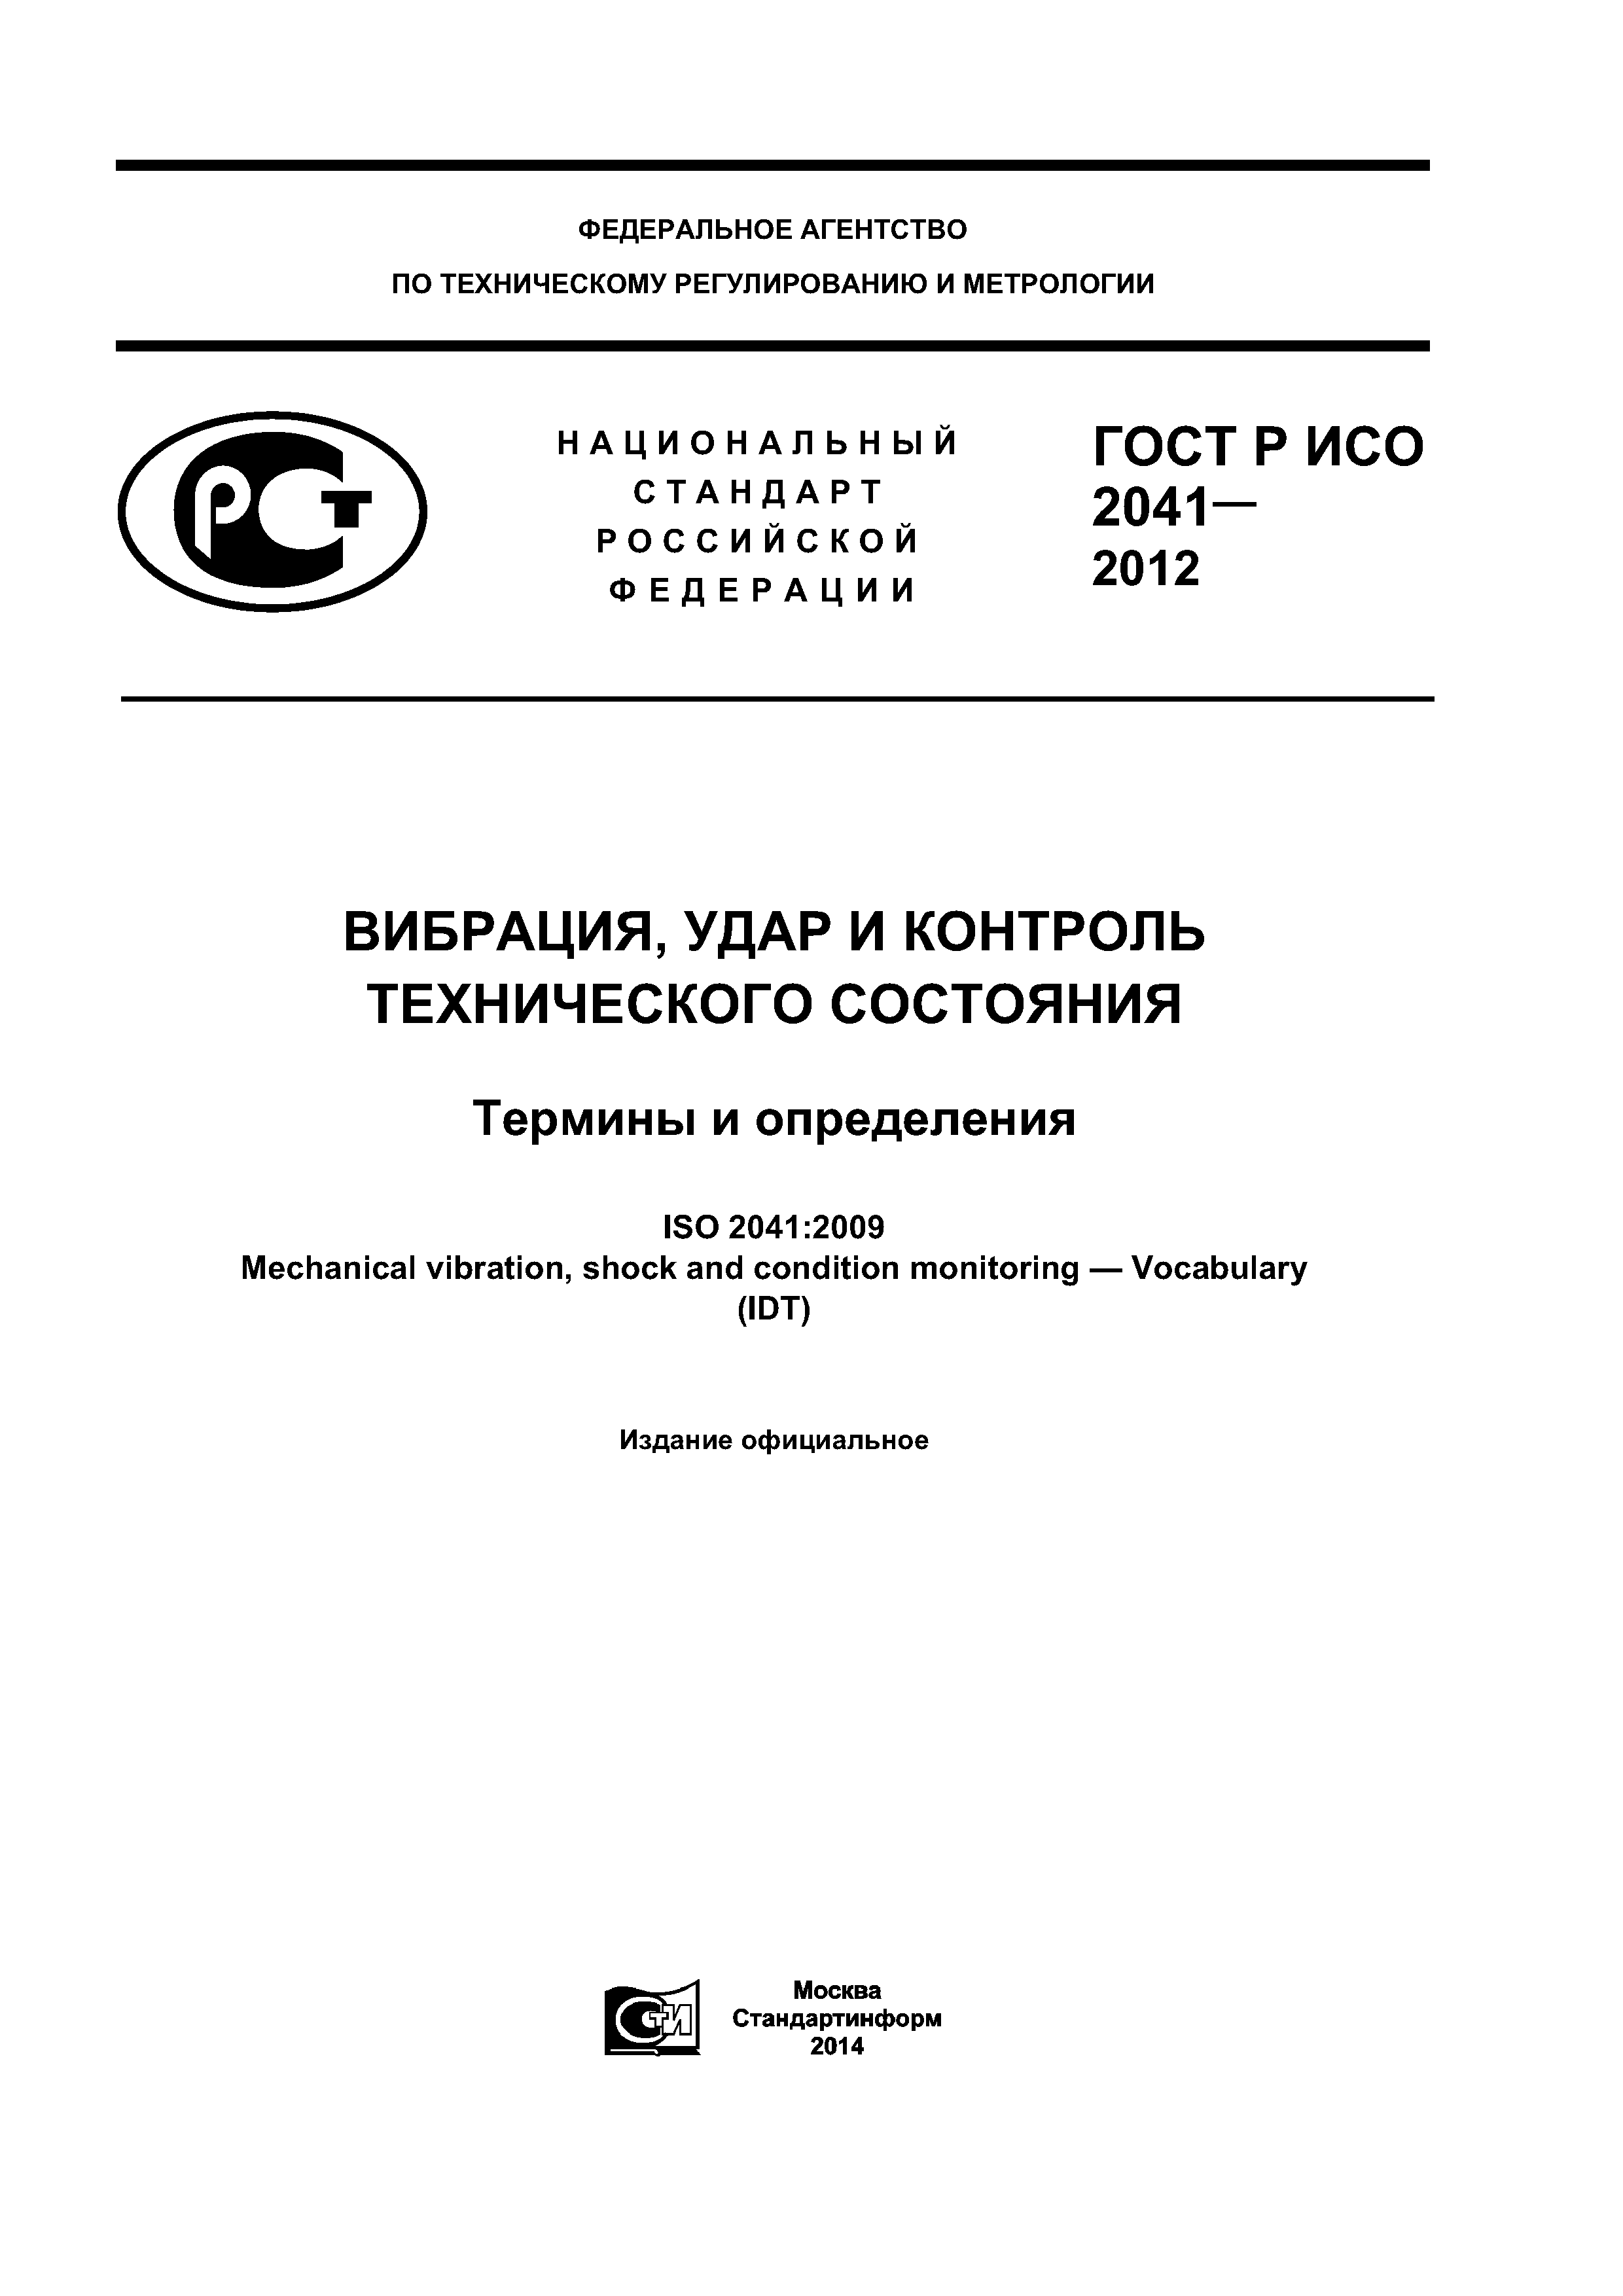 ГОСТ Р ИСО 2041-2012